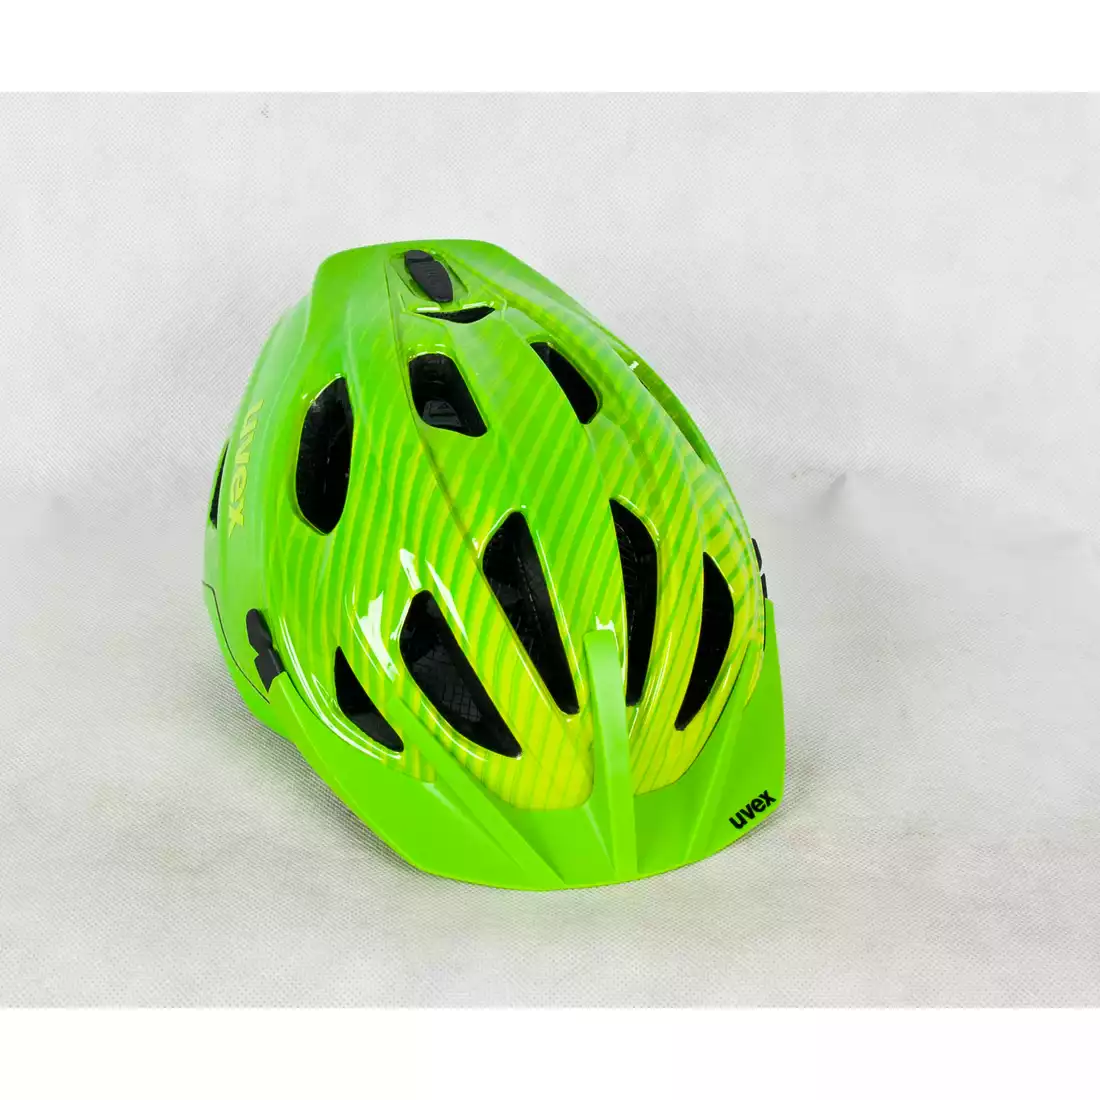 UVEX ADIGE kask rowerowy zielono-cytrynowy